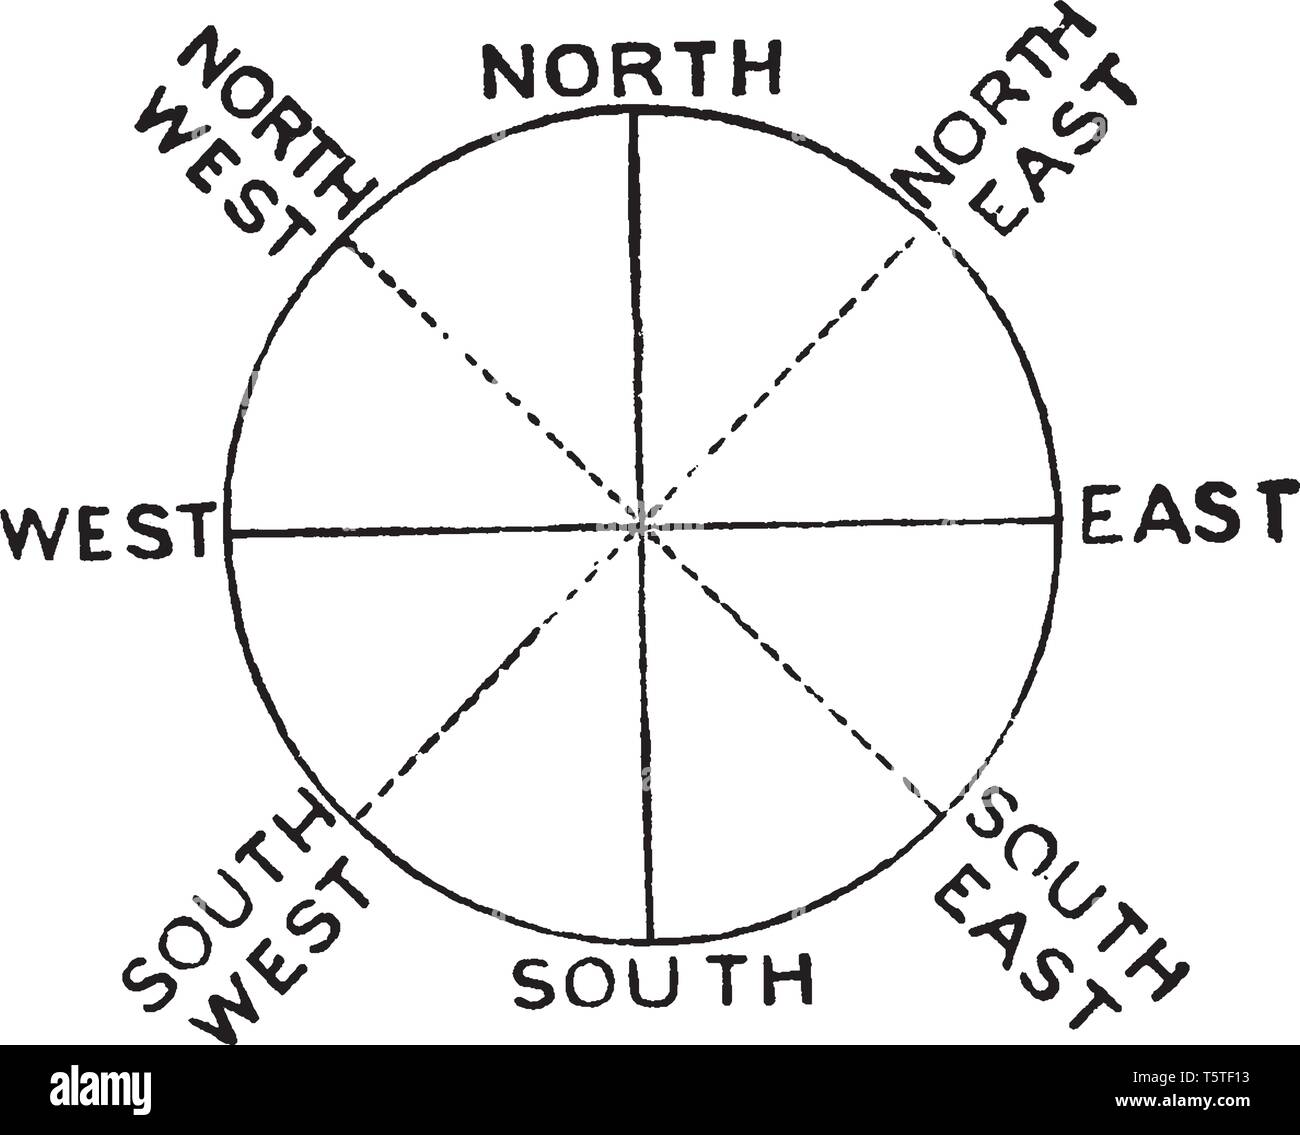 Kompass Punkte werden oft durch die Addition der vier intercardinal Richtungen unterteilt, vintage Strichzeichnung oder Gravur Abbildung. Stock Vektor